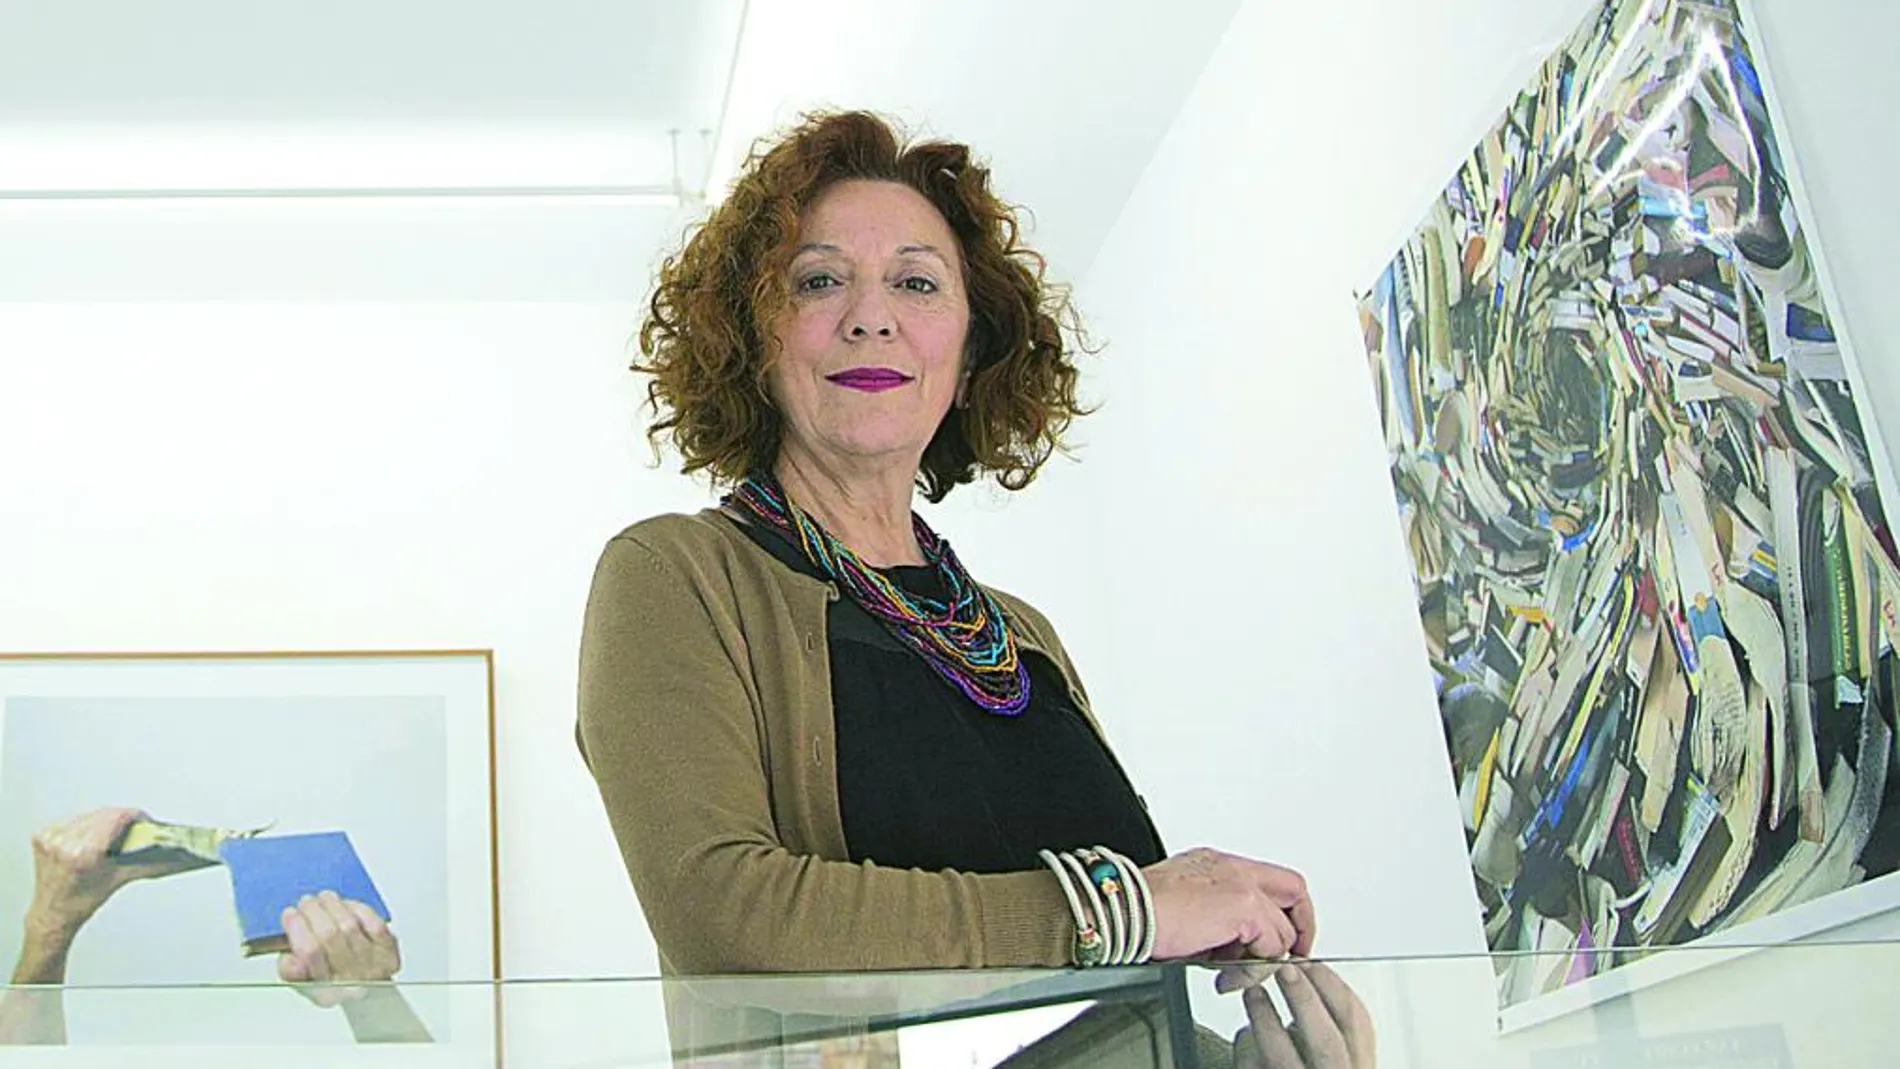 La galerista Adora Calvo en su espacio expositivo en la capital salmantina